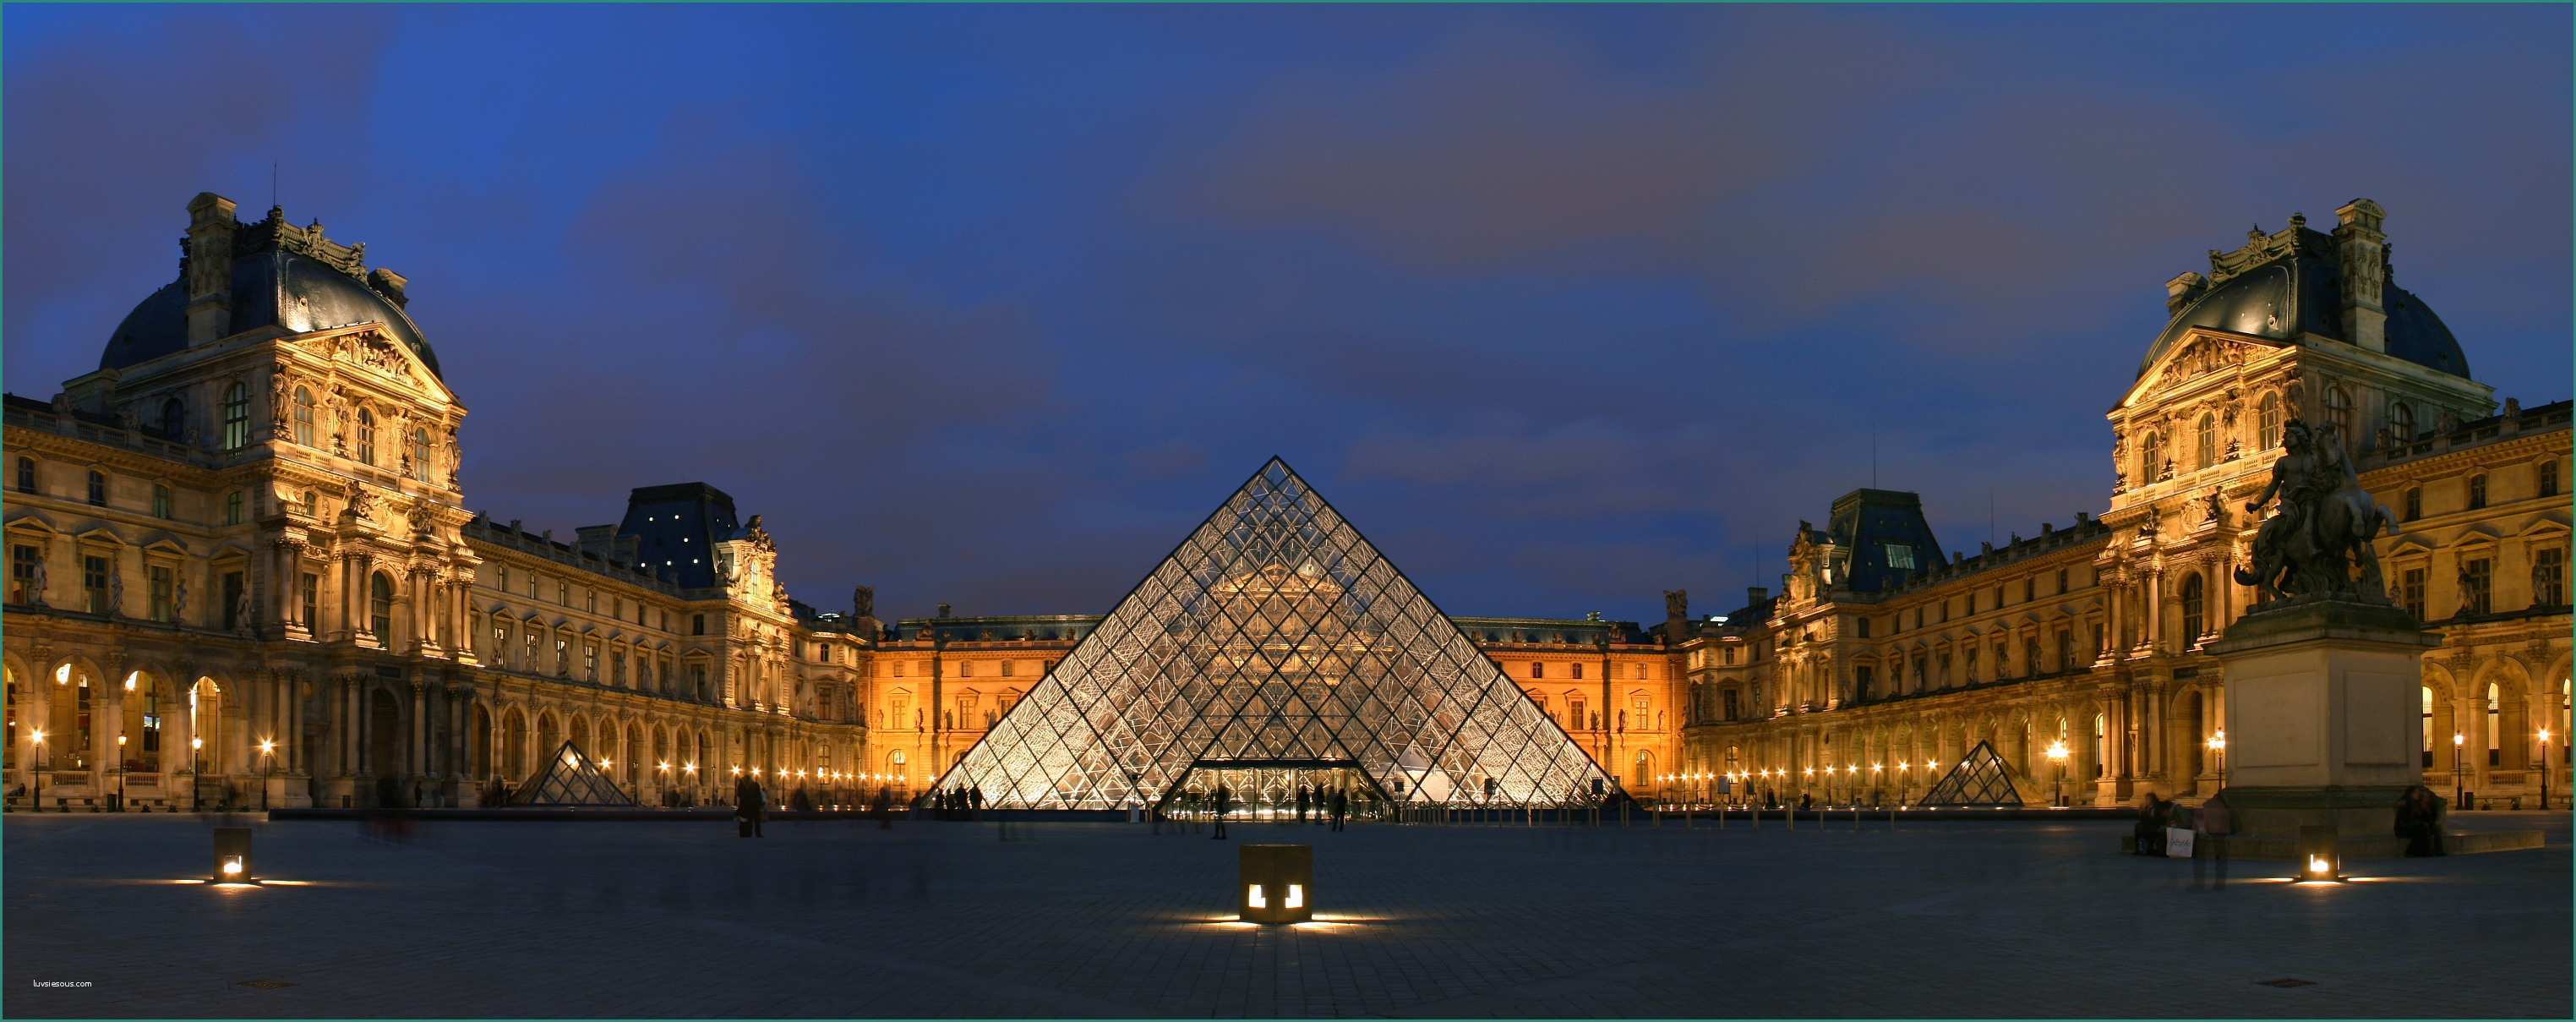 Camille Pissarro Opere E Paris Wikimedia Mons